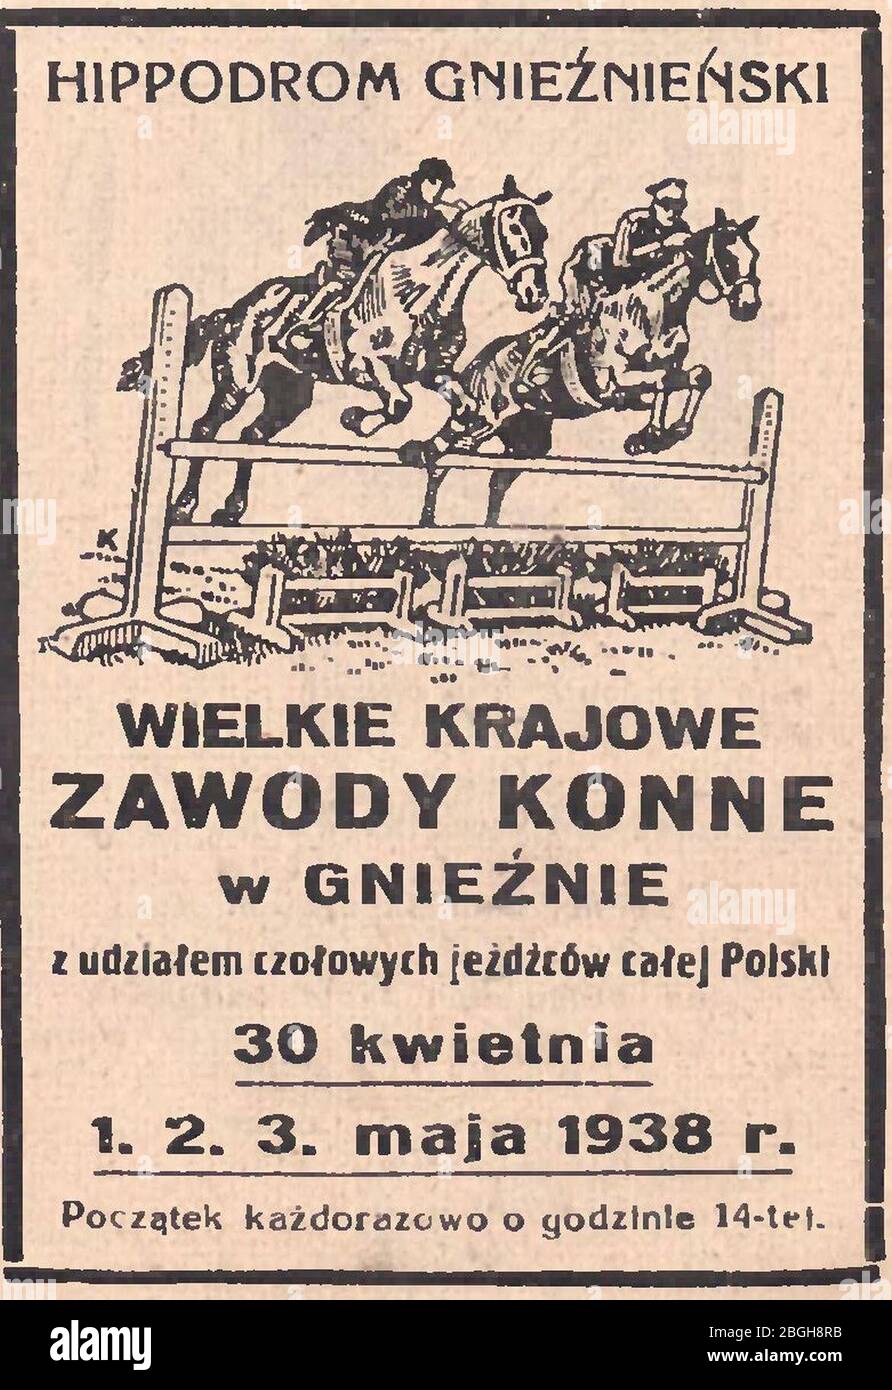 Hippodrom gnieźnieński - Wielkie zawody konne w Gnieźnie, 1938. Stockfoto